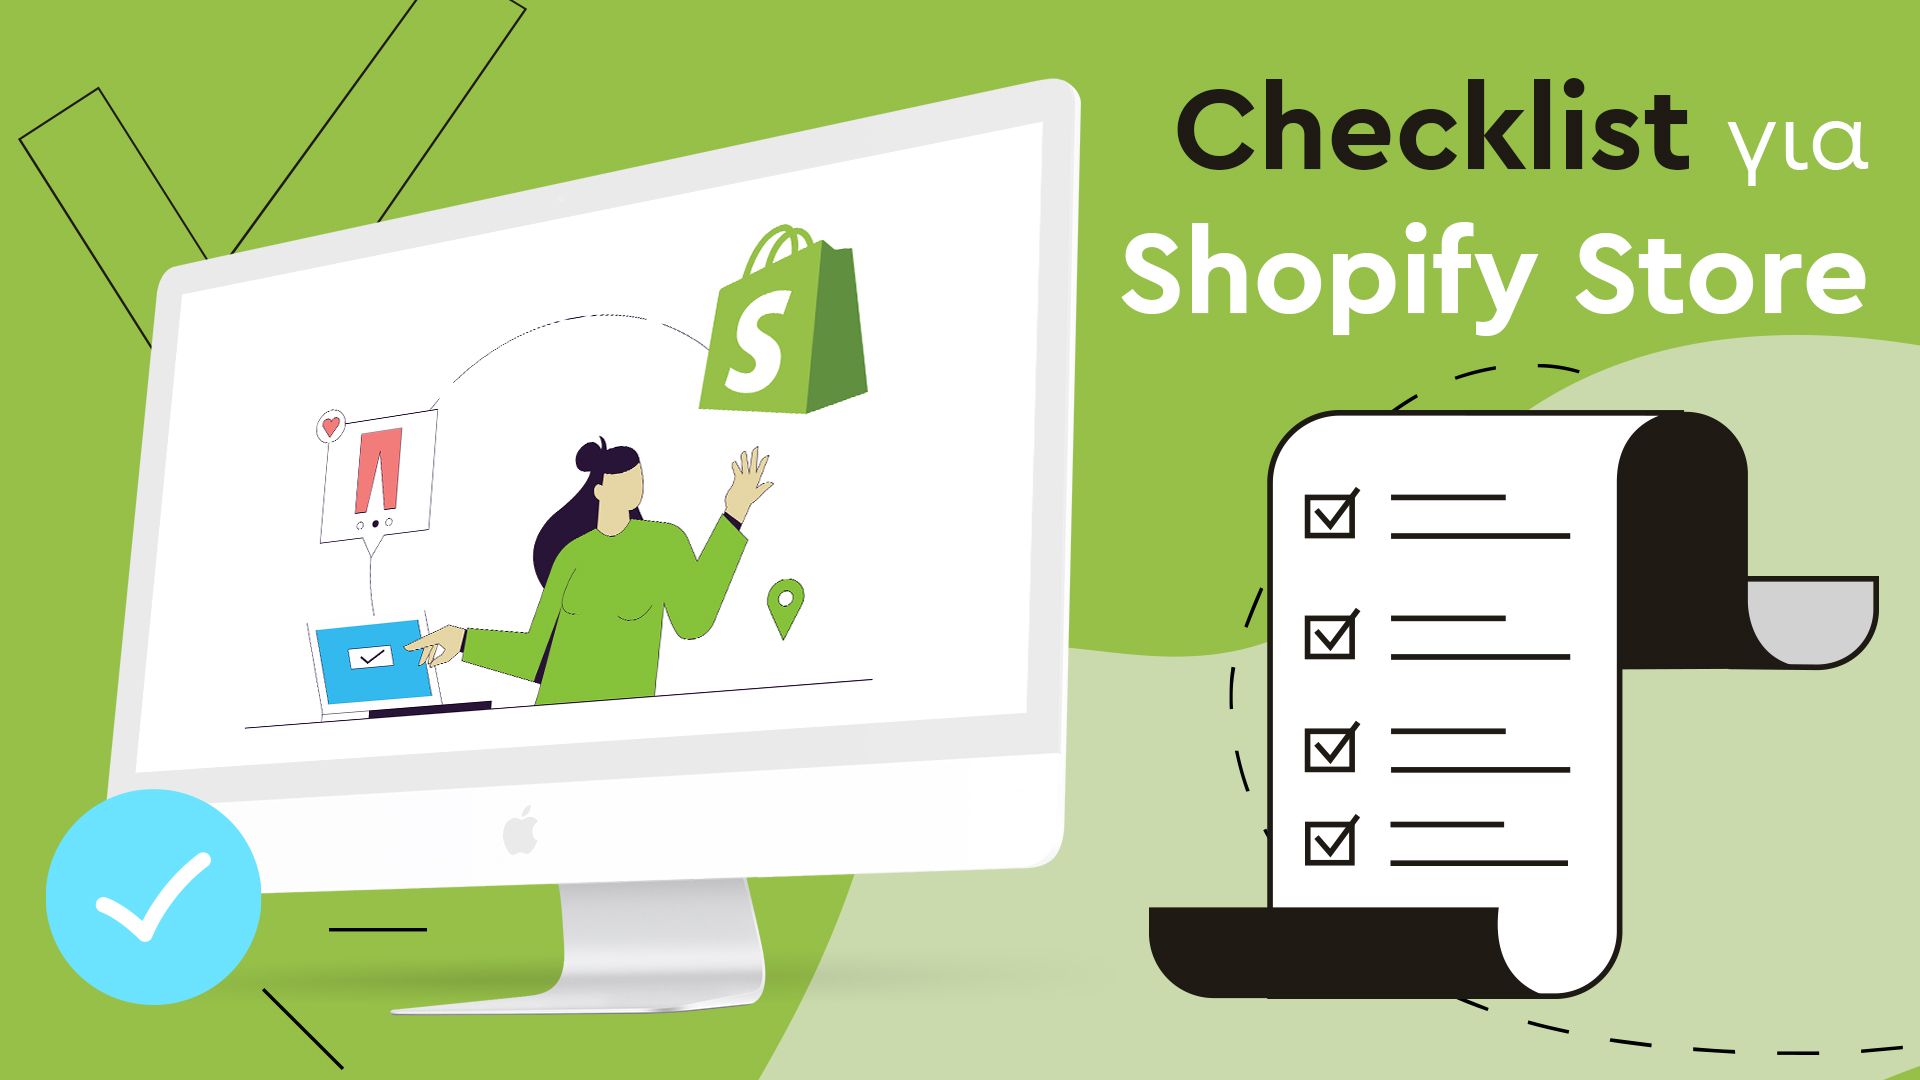 οθόνη με shopify logo - checklist για κατασκευή shopify